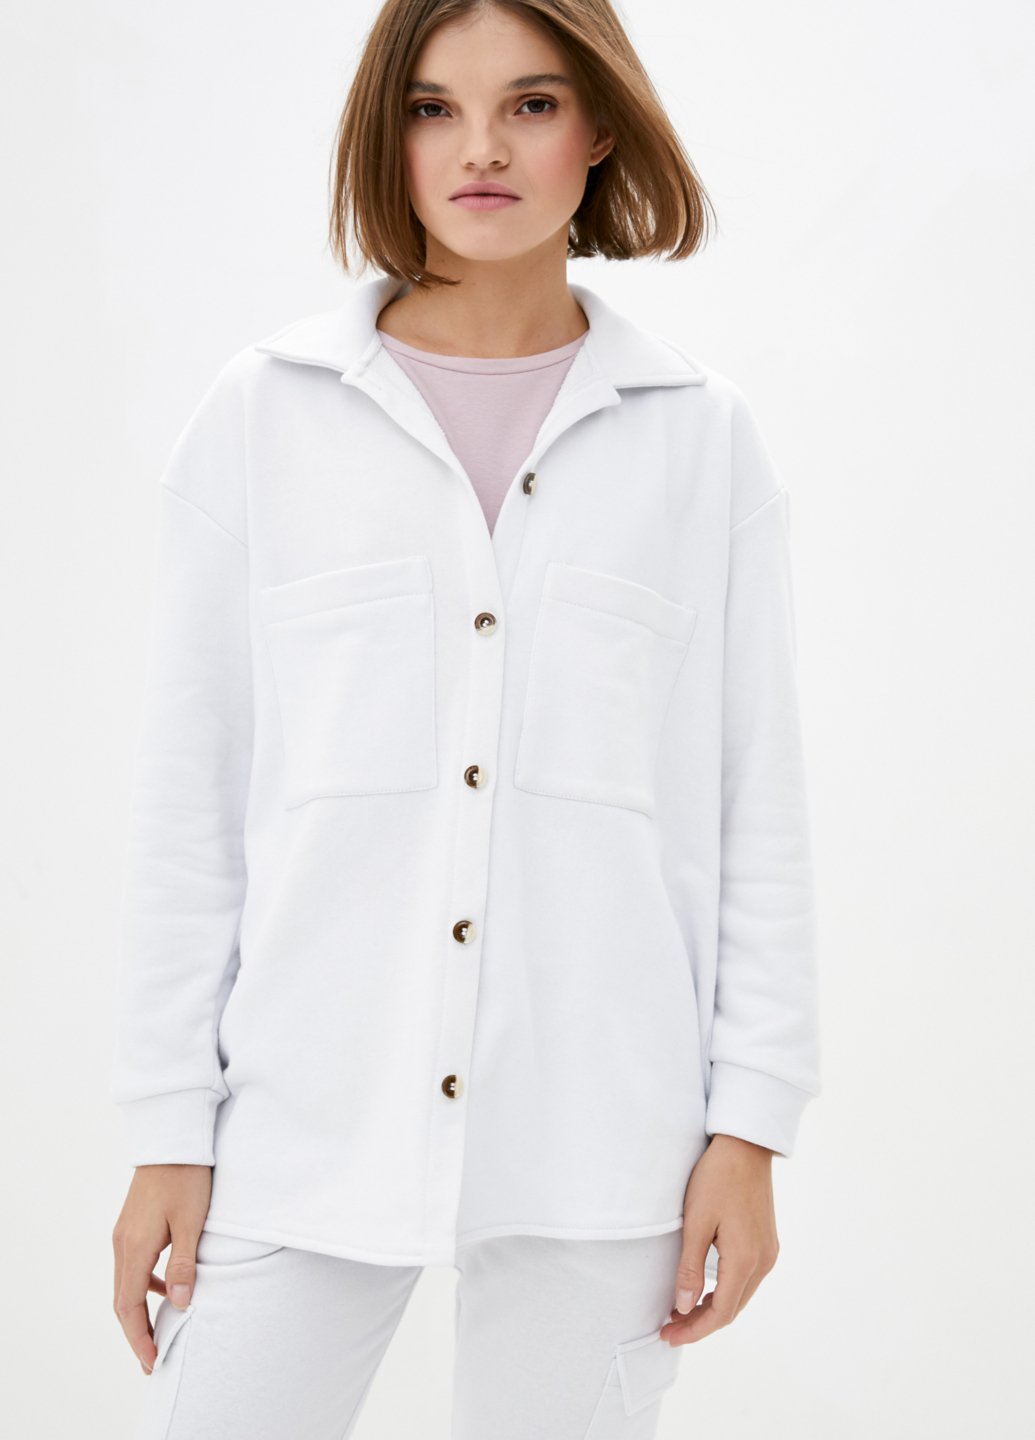 Купить Трикотажная рубашка женская оверсайз Merlini Барселона 200000056 - Белый, 42-44 в интернет-магазине